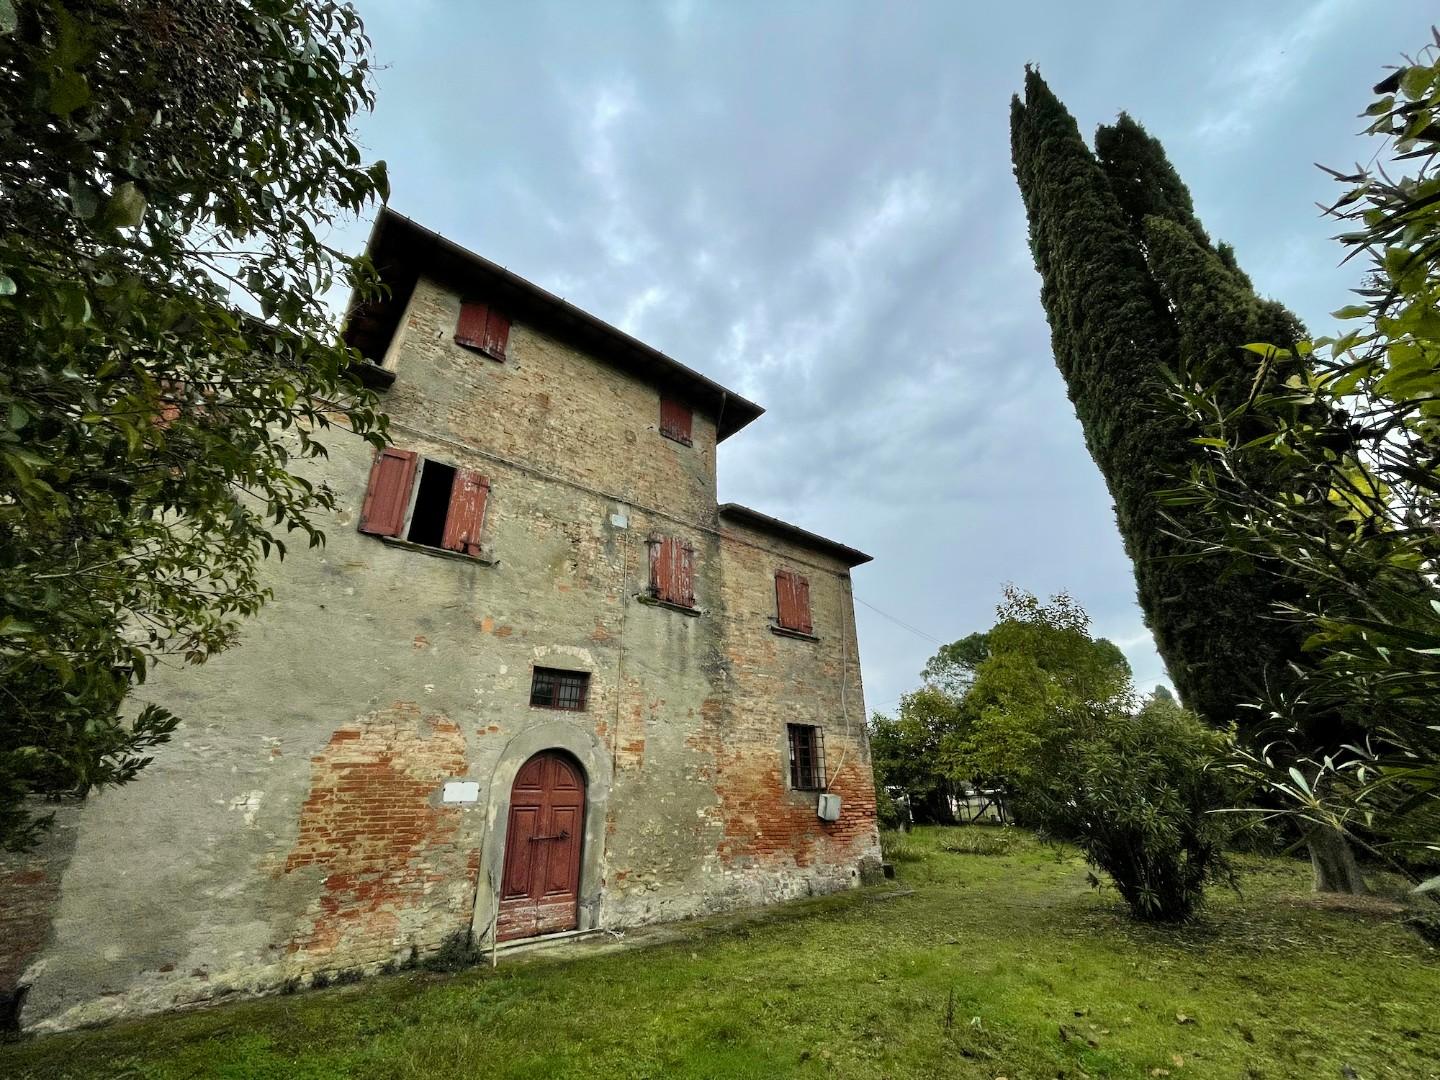 Villa - Cusignano, San Miniato (2/58)